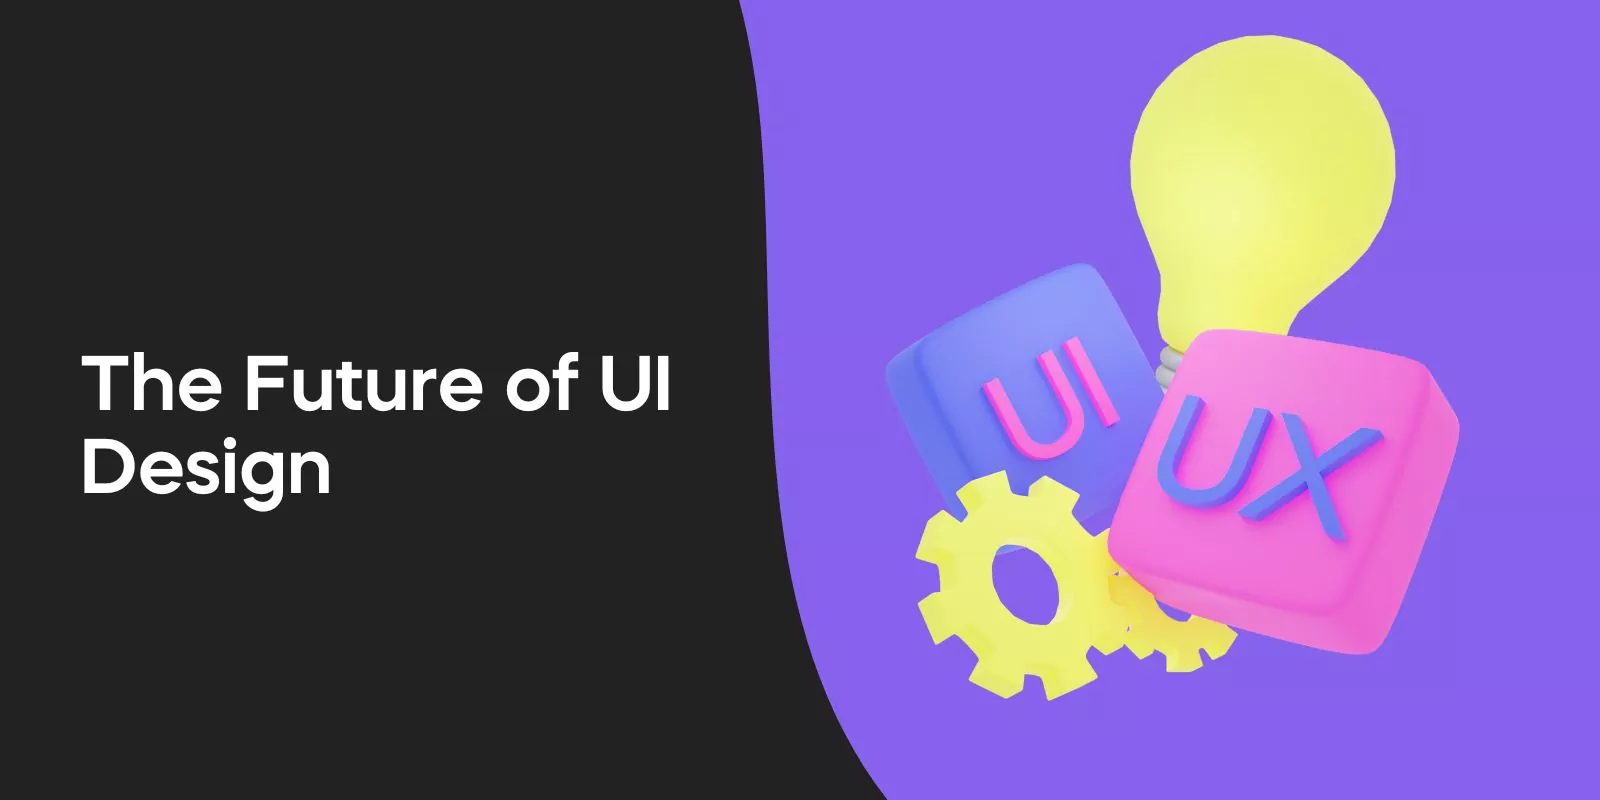 The Future of UI Design